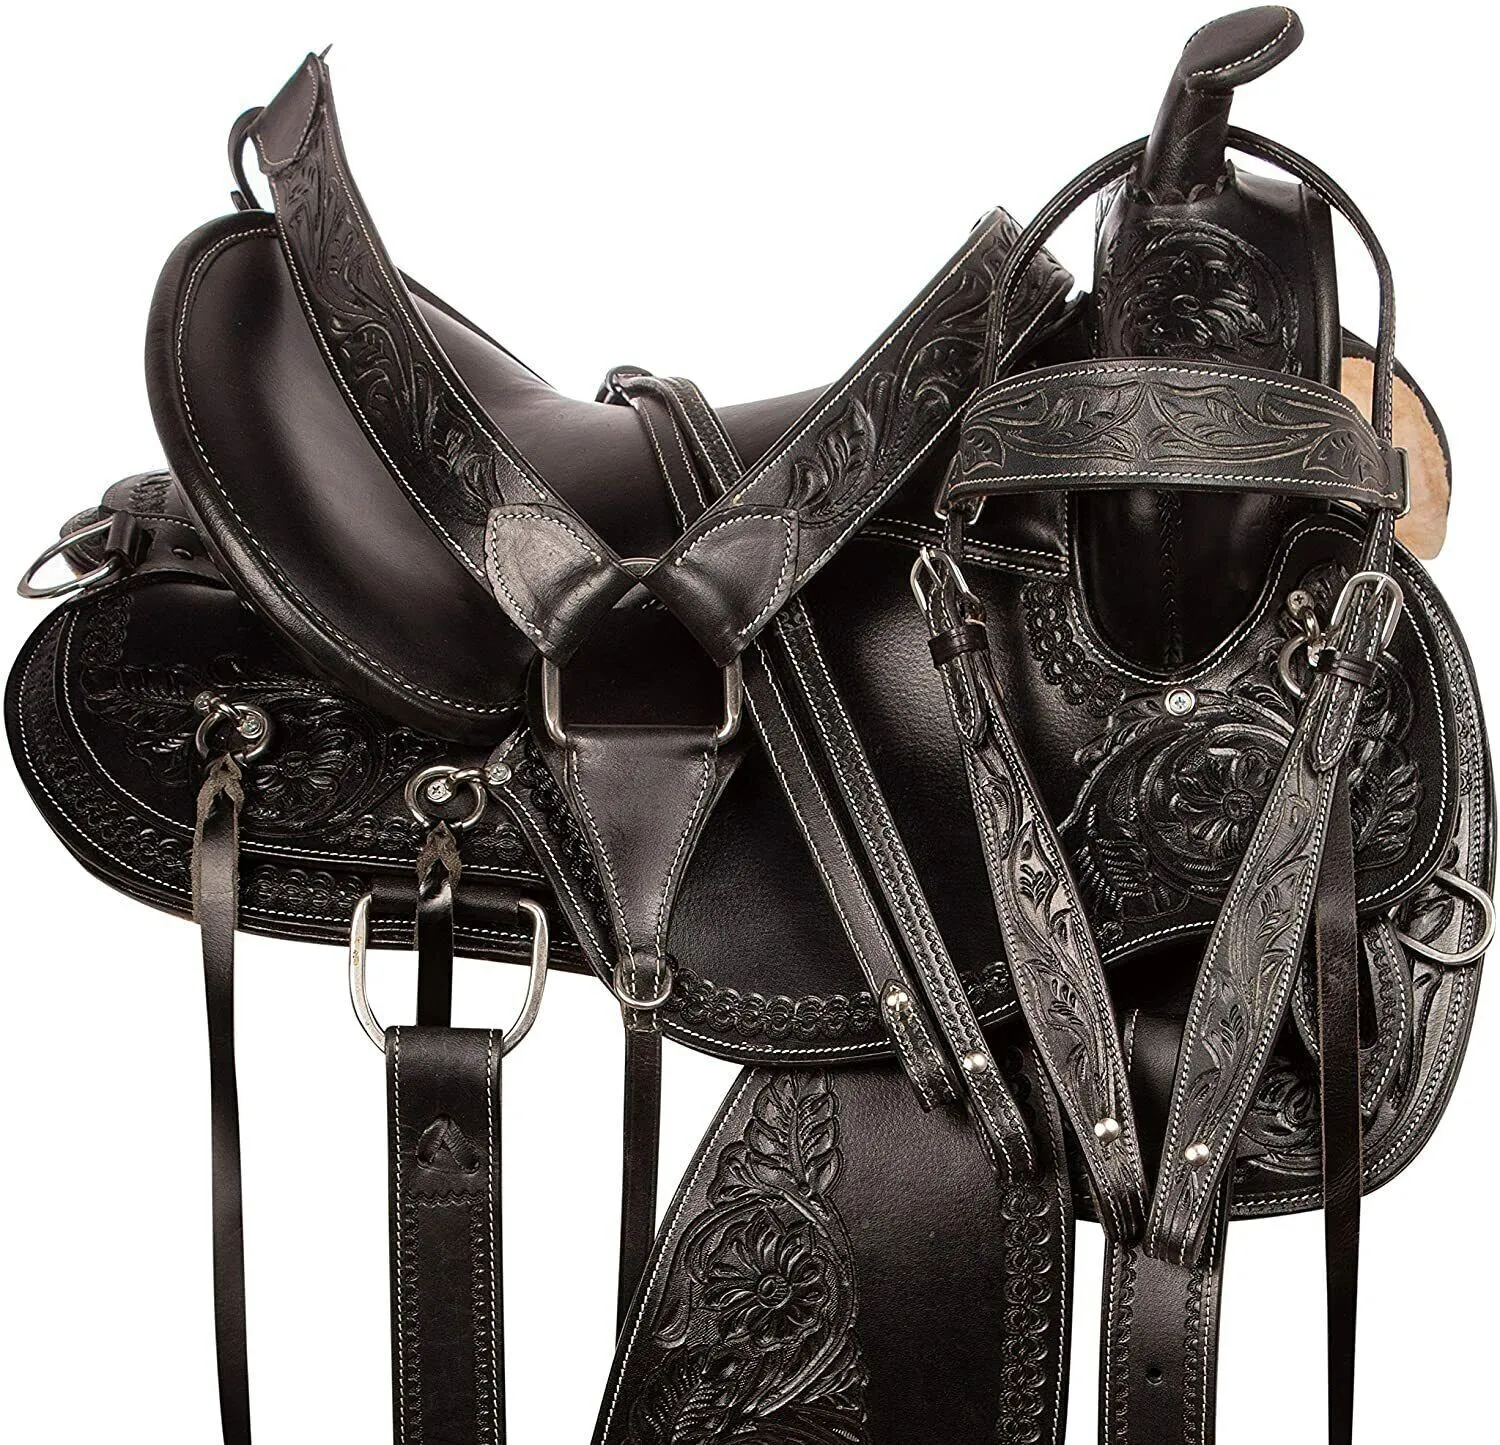 Di alta qualità resistente cavallo selle in pelle cavallo occidentale sella con personalizzare selle cavalli di colore occidentale per la vendita all'ingrosso